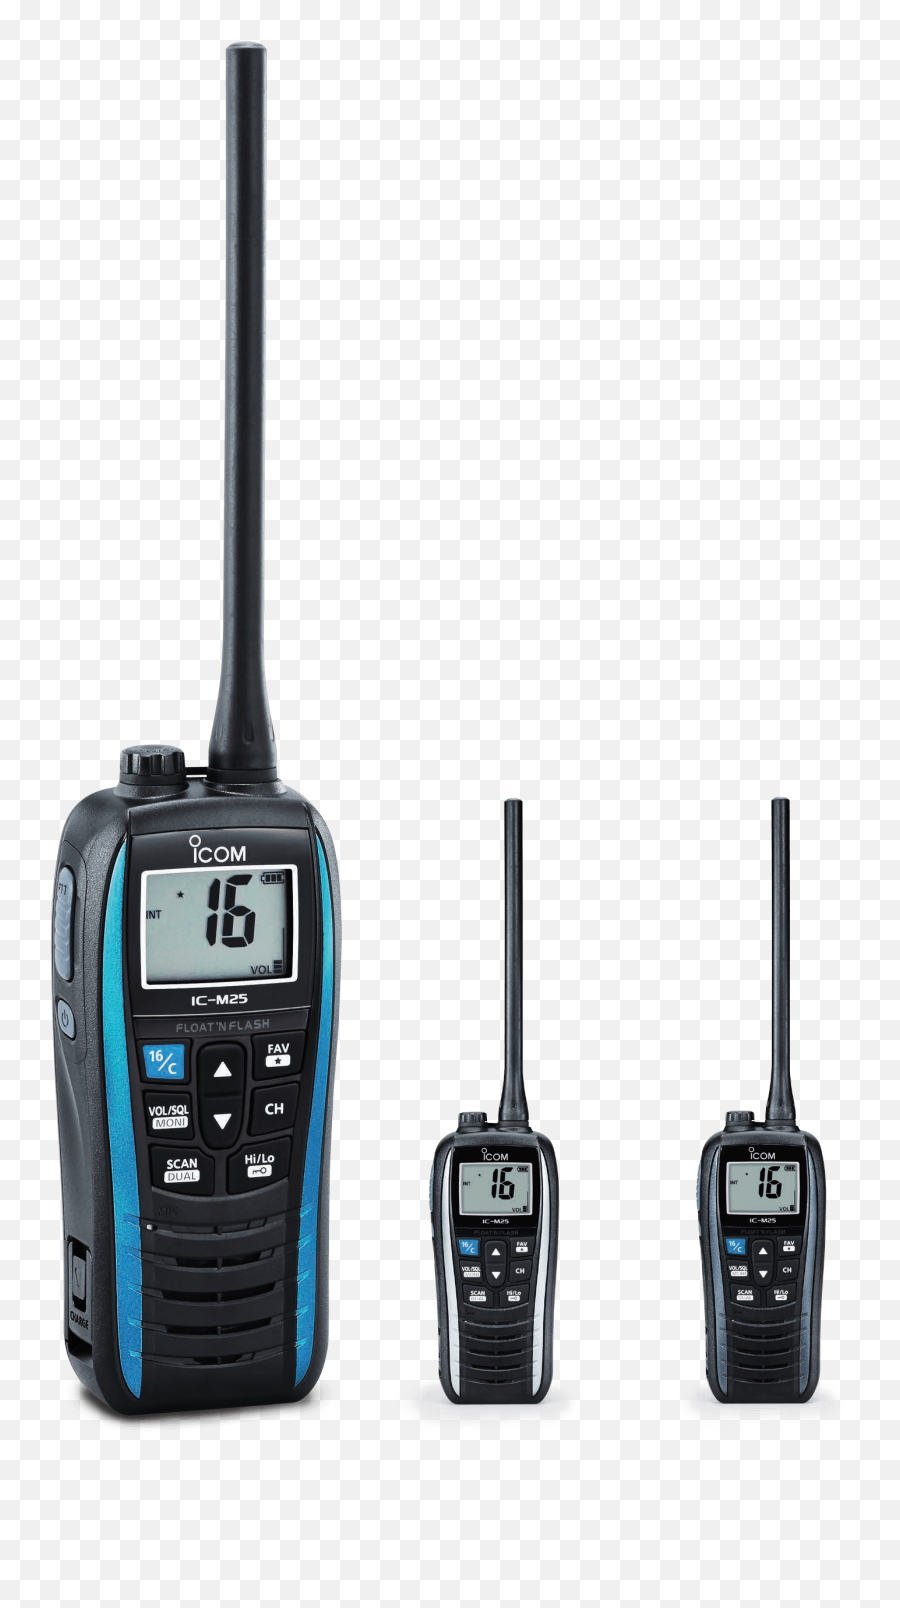 Icom Handheld Vhf Marine Radio - Marine Communication Equipment Png,Icon Two Way Radio